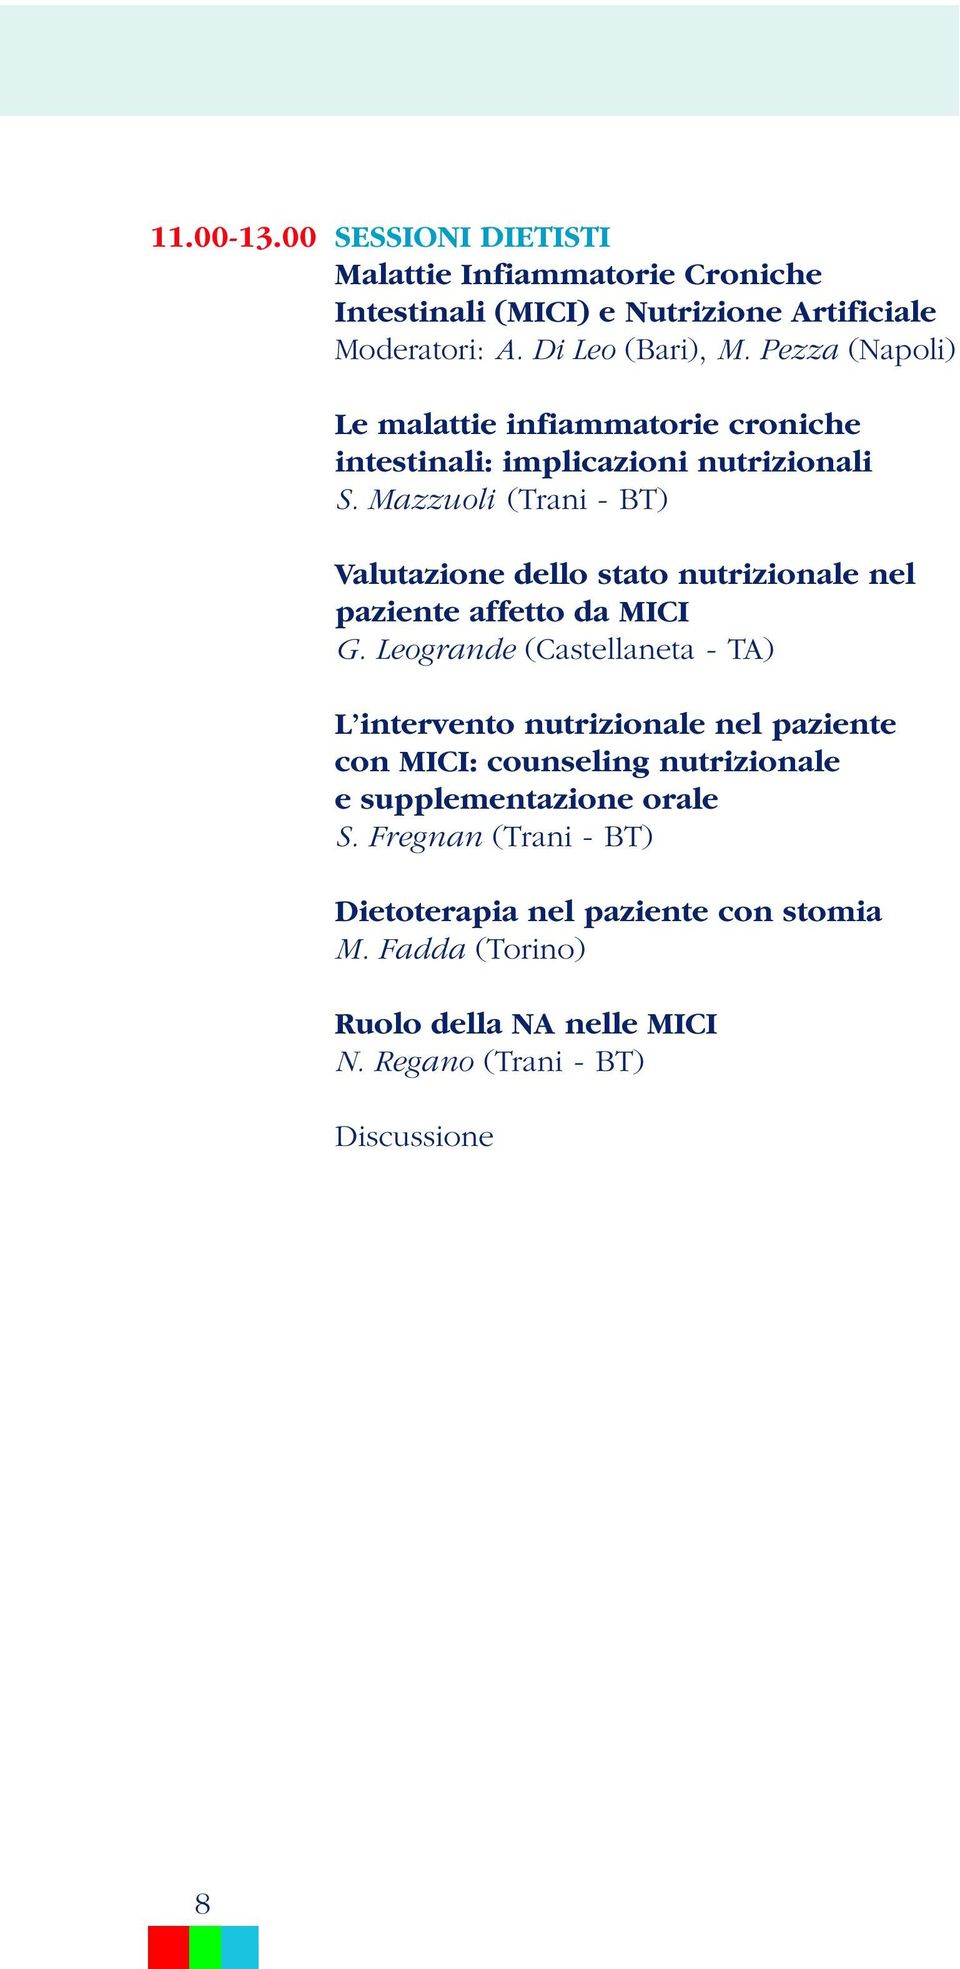 Mazzuoli (Trani - BT) Valutazione dello stato nutrizionale nel paziente affetto da MICI G.